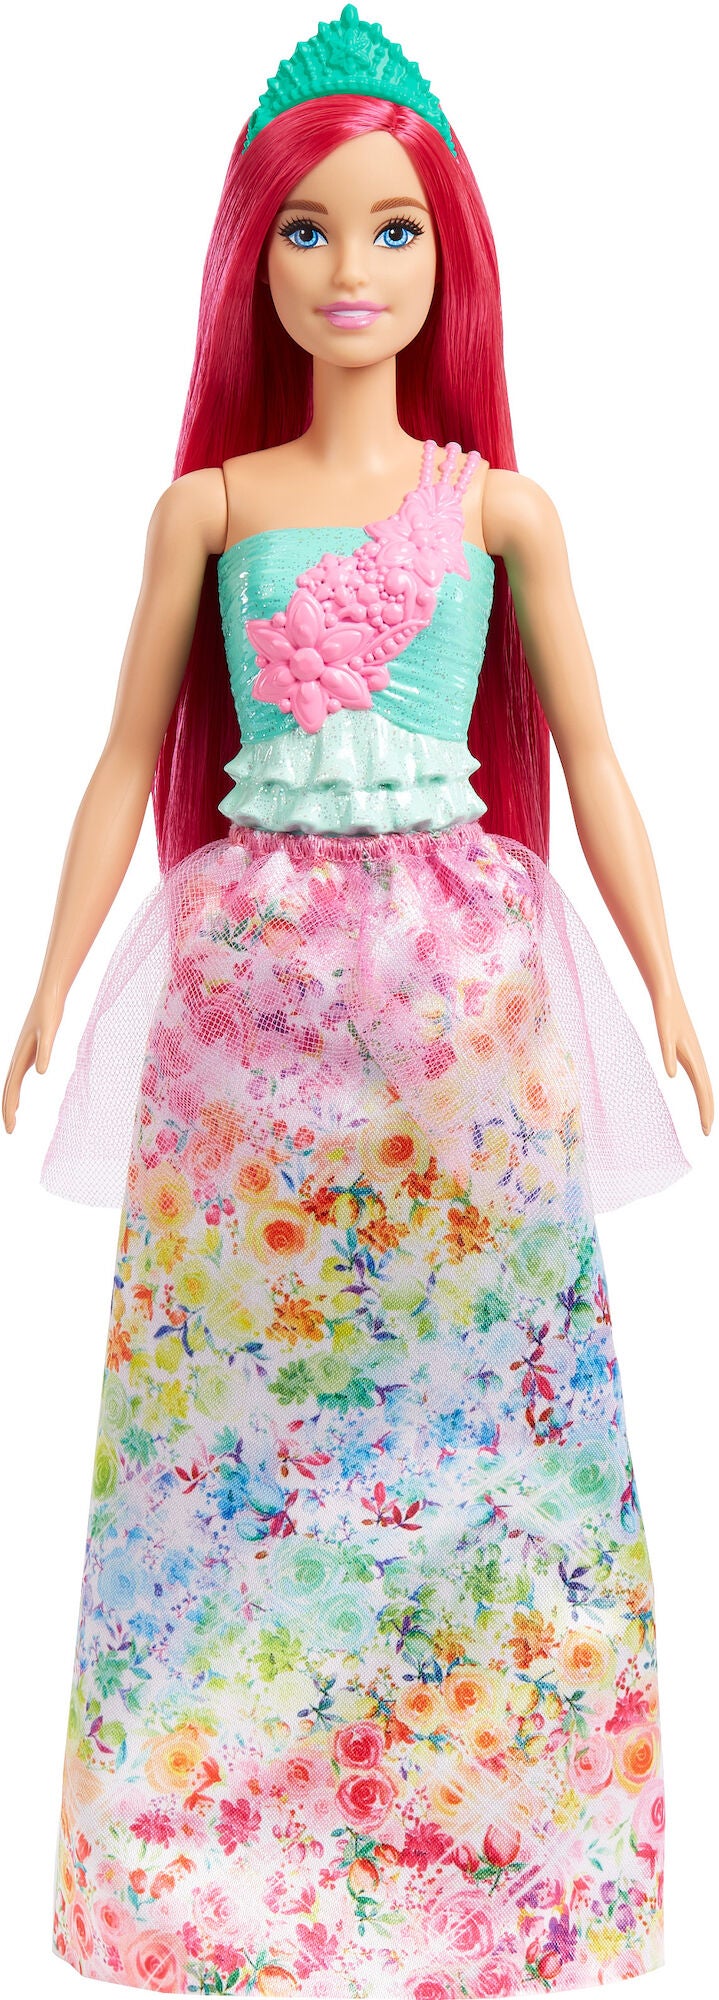 Barbie Dreamtopia Puppe Prinzessin mit pinken Haaren von Barbie